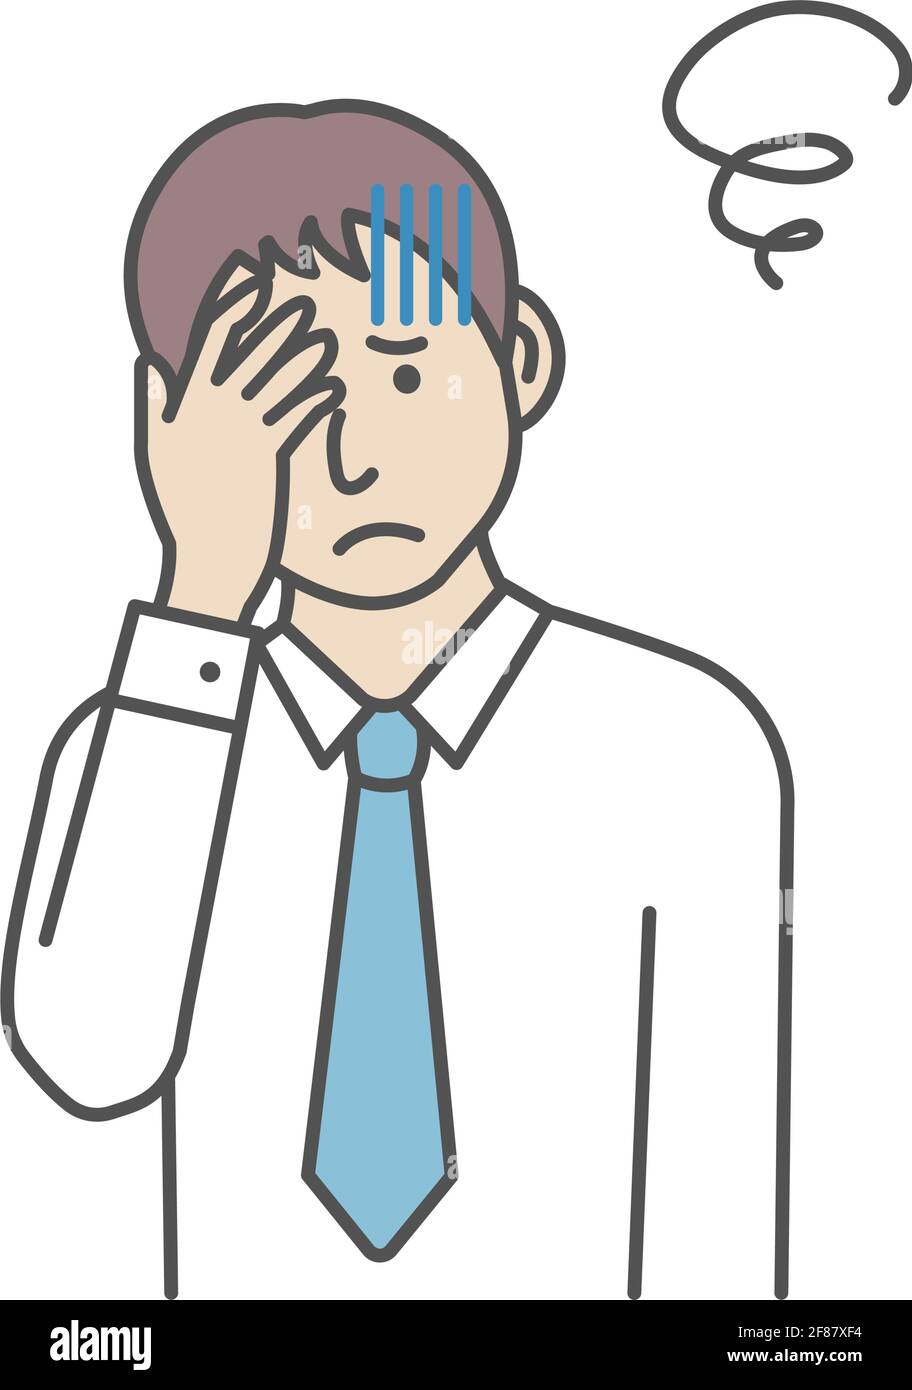 Vektor-Illustration eines jungen Geschäftsmannes, der den Kopf quetscht (oh mein gott, Kopfschmerzen) Stock Vektor